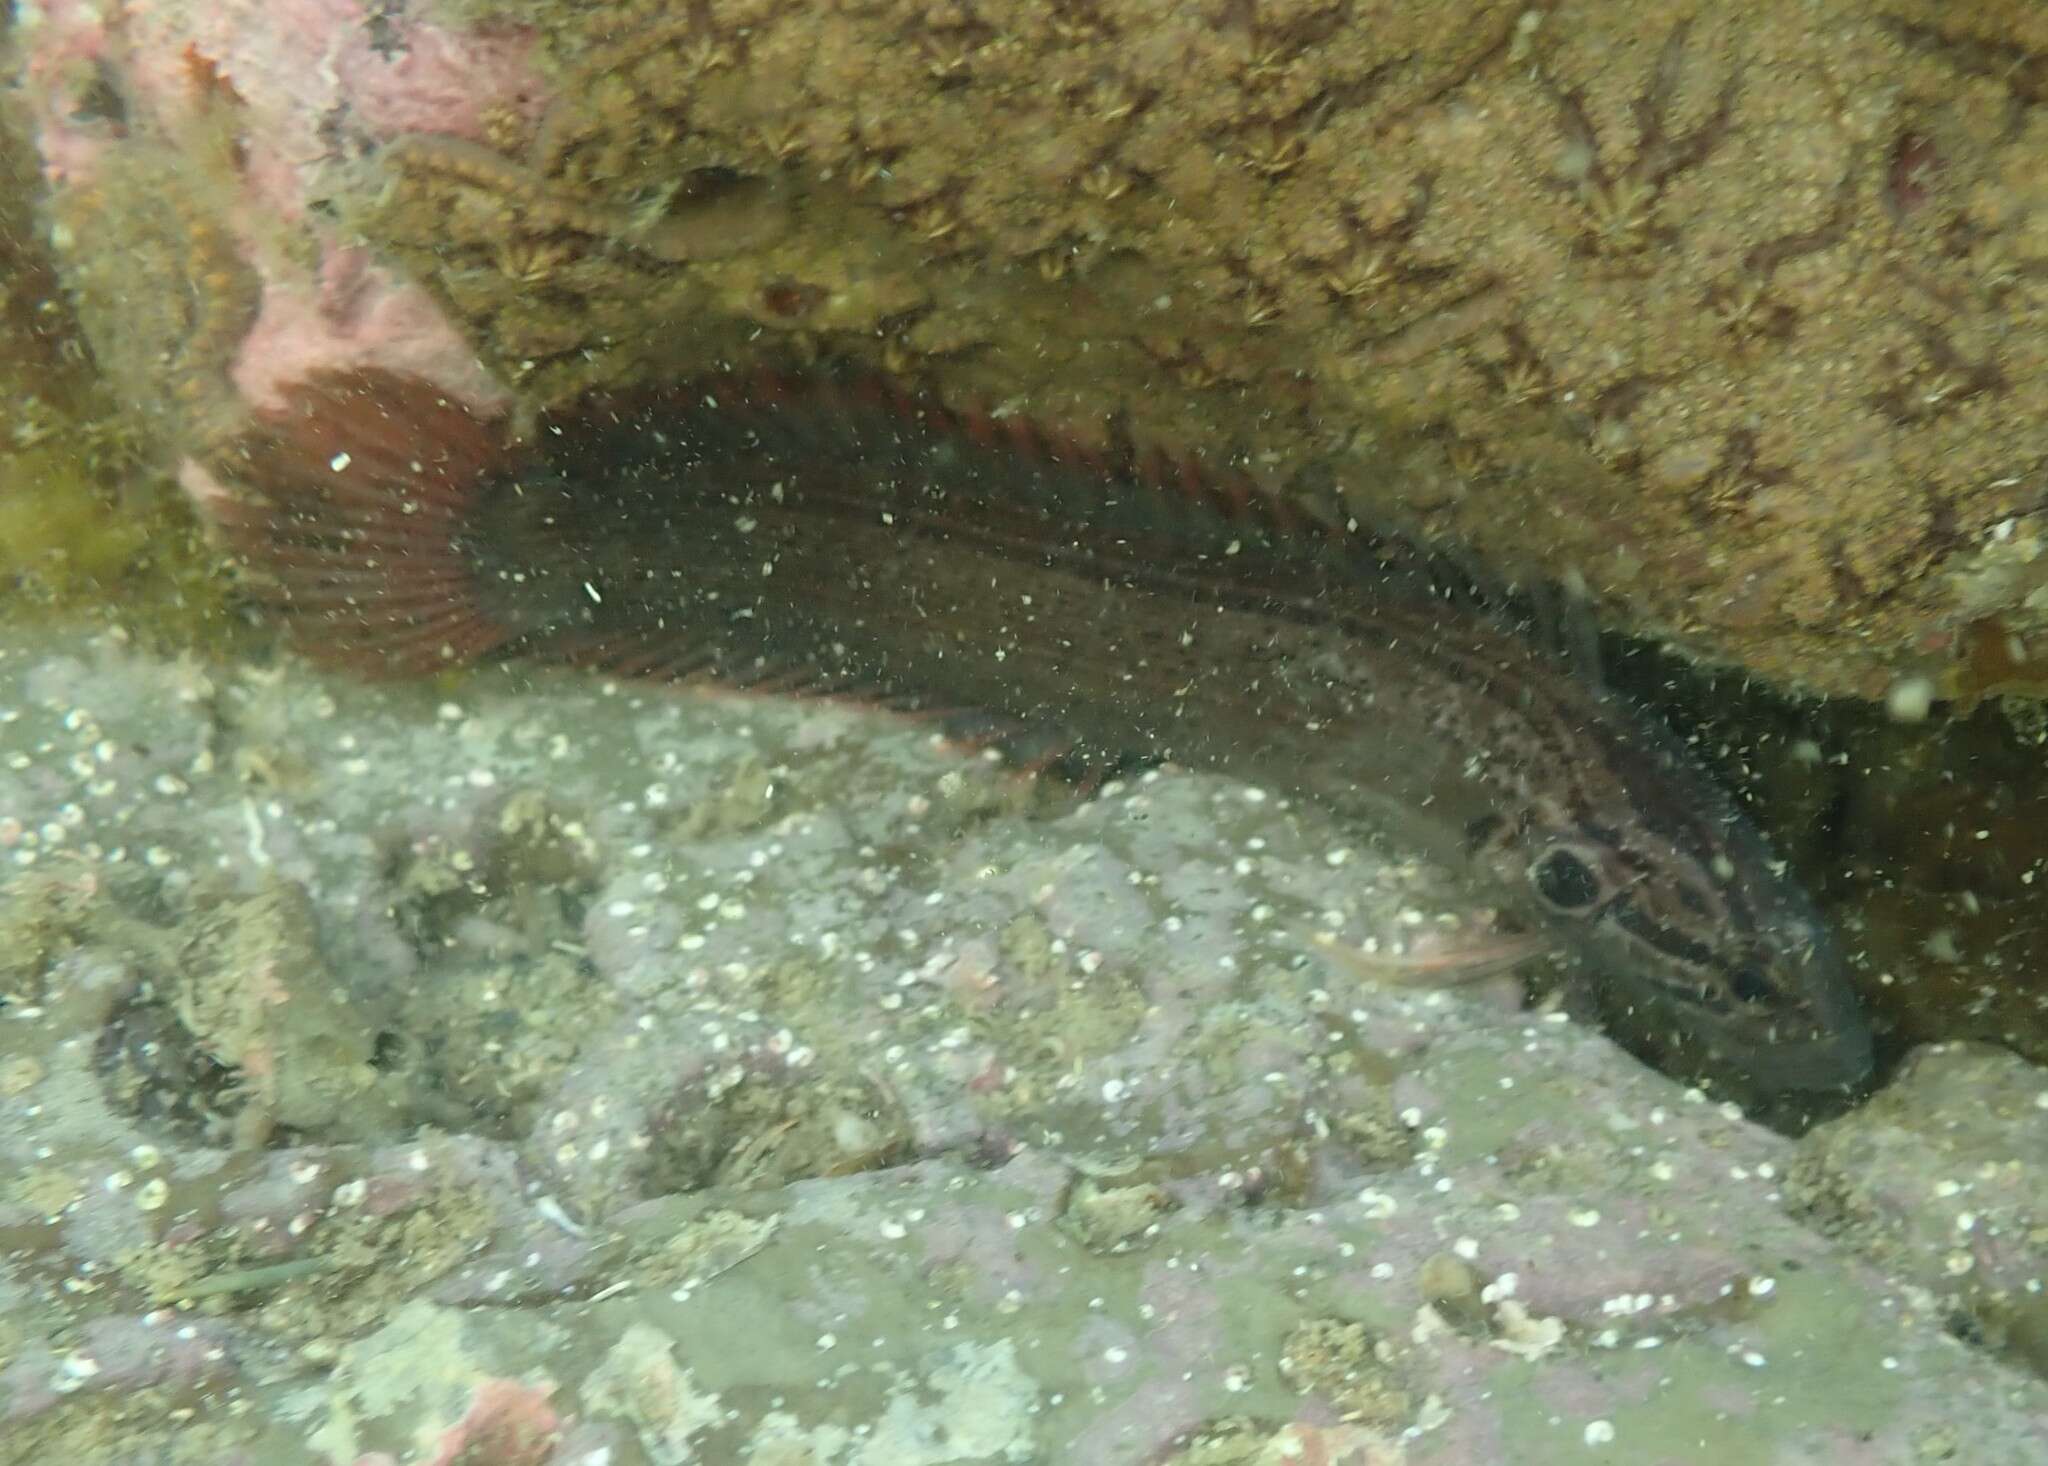 Image of New Zealand rockfish